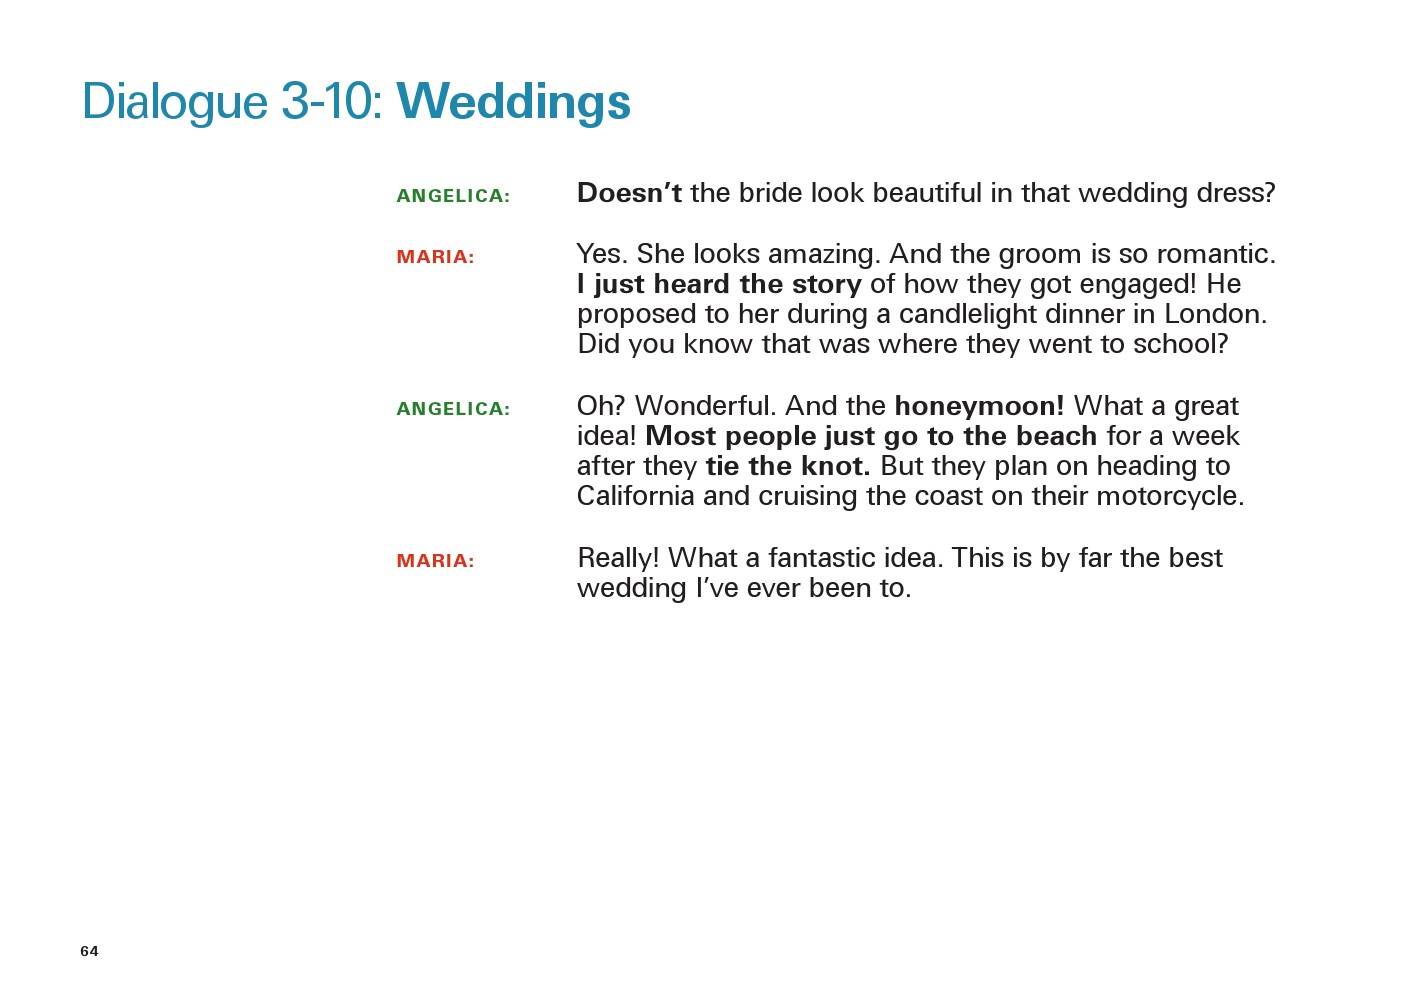 یادگیری انگلیسی آمریکایی-مکالمات و دیالوگ های روزمره- مکالمه 10-3: مراسم ازدواج(Dialogue 3-10: Weddings)